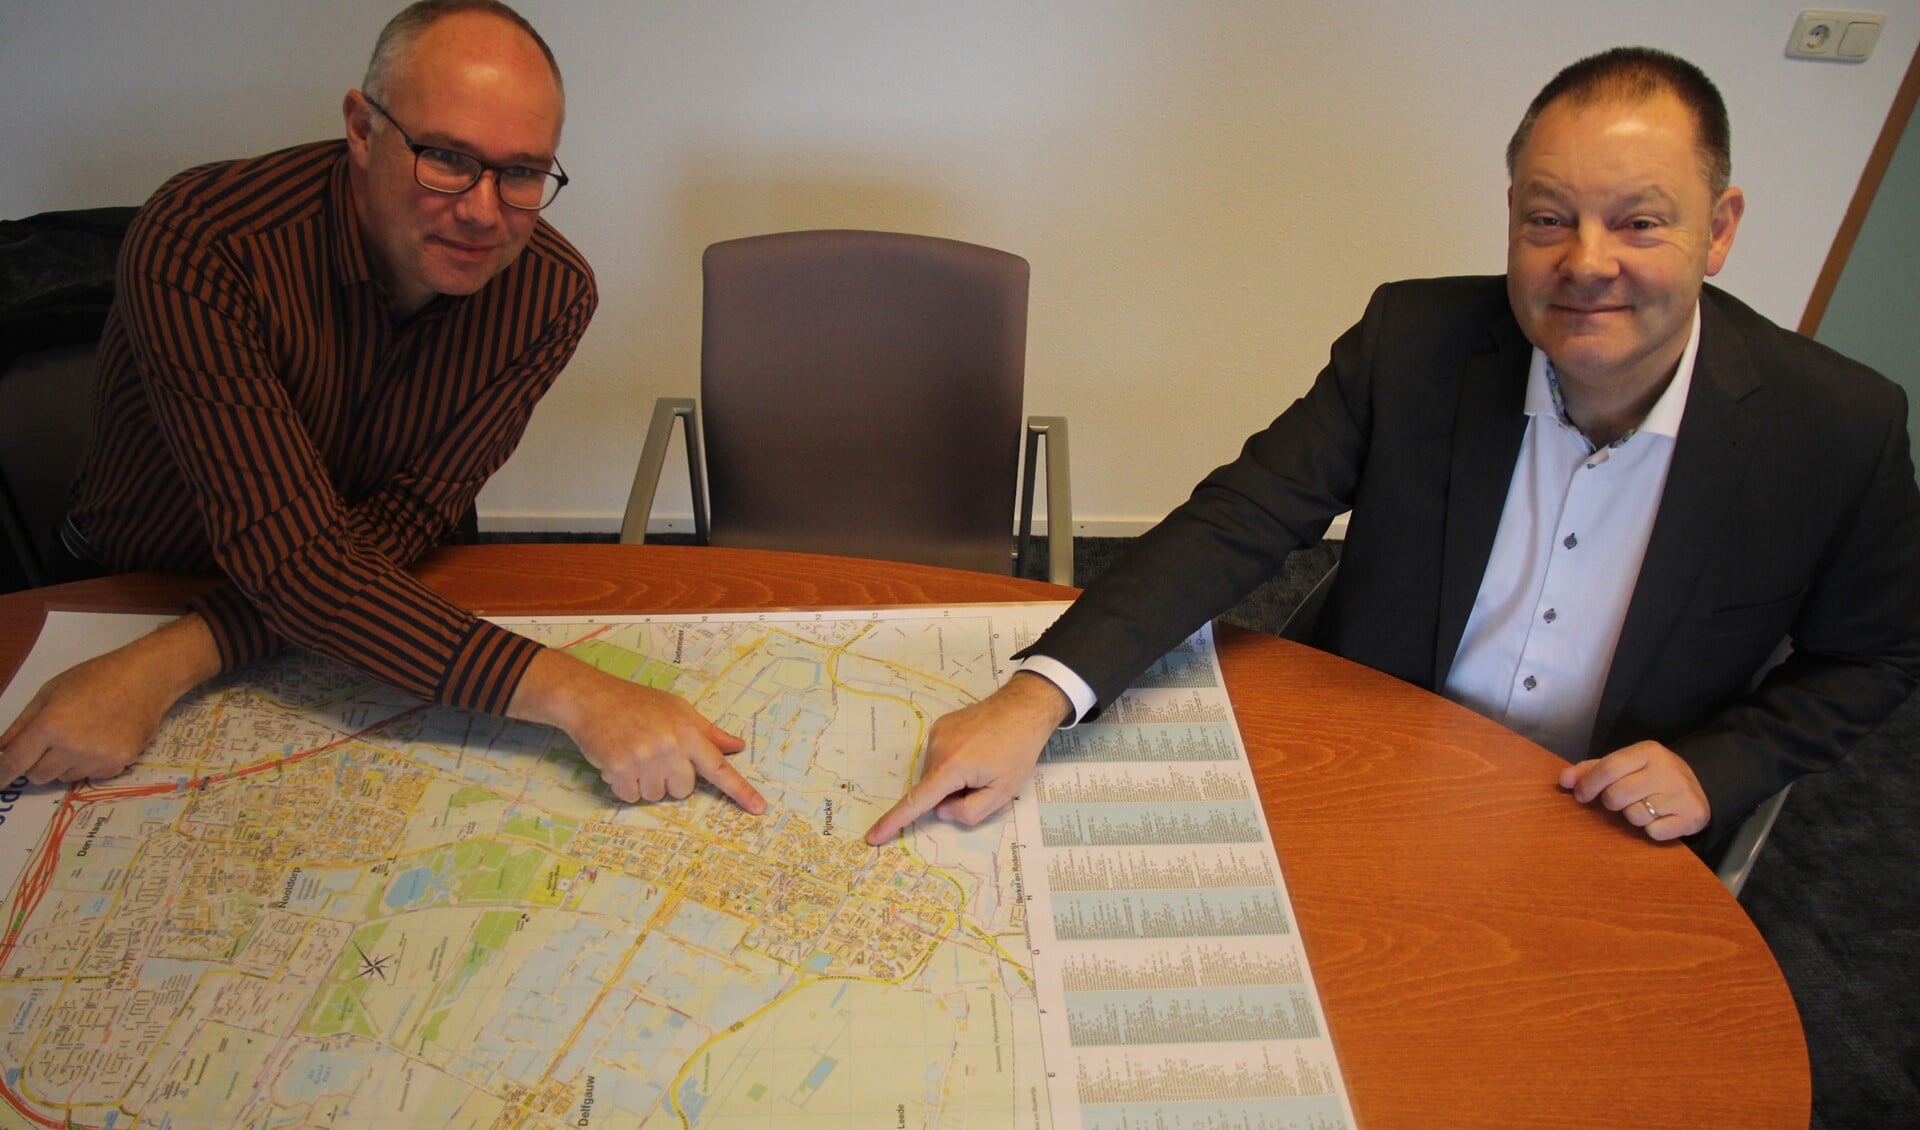 Projectleider Erik Bulten en wethouder Frank van Kuppeveld met de kaart van Pijnacker. Ze wijzen Klapwijk aan als een zeer geschikte wijk voor aardwarmte.